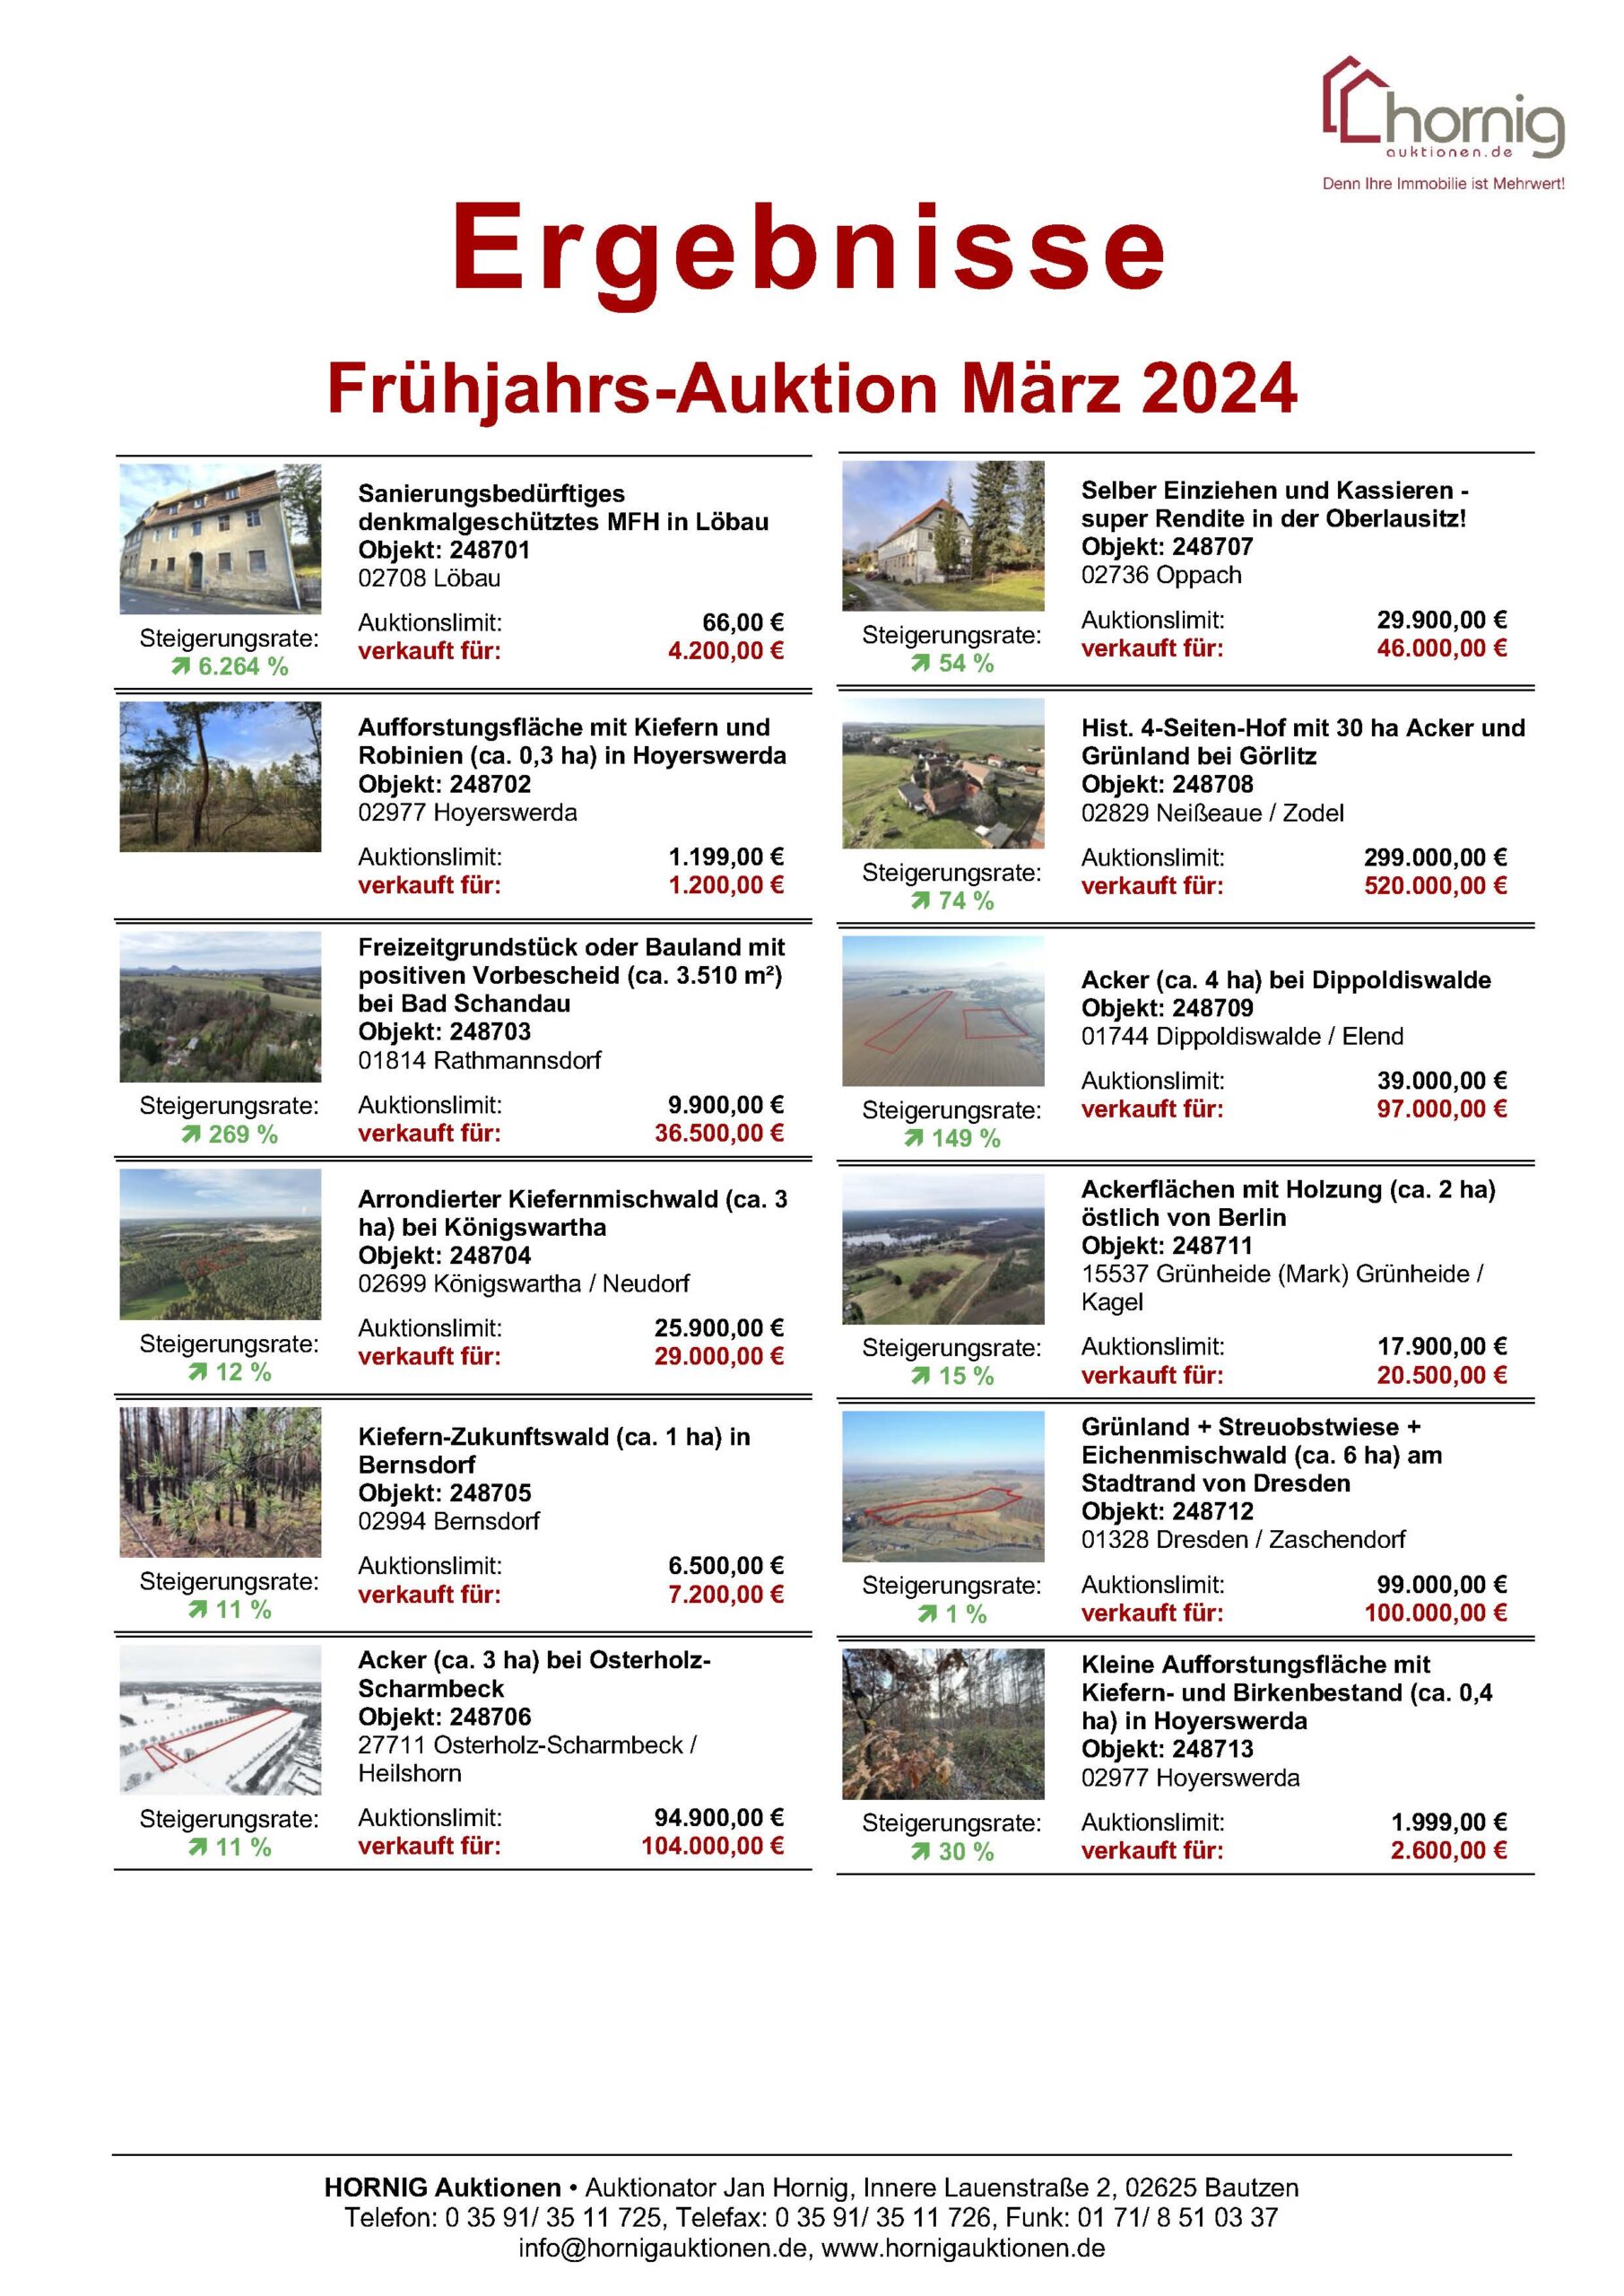 Ergebnisliste Frühjahrs-Auktion 2024